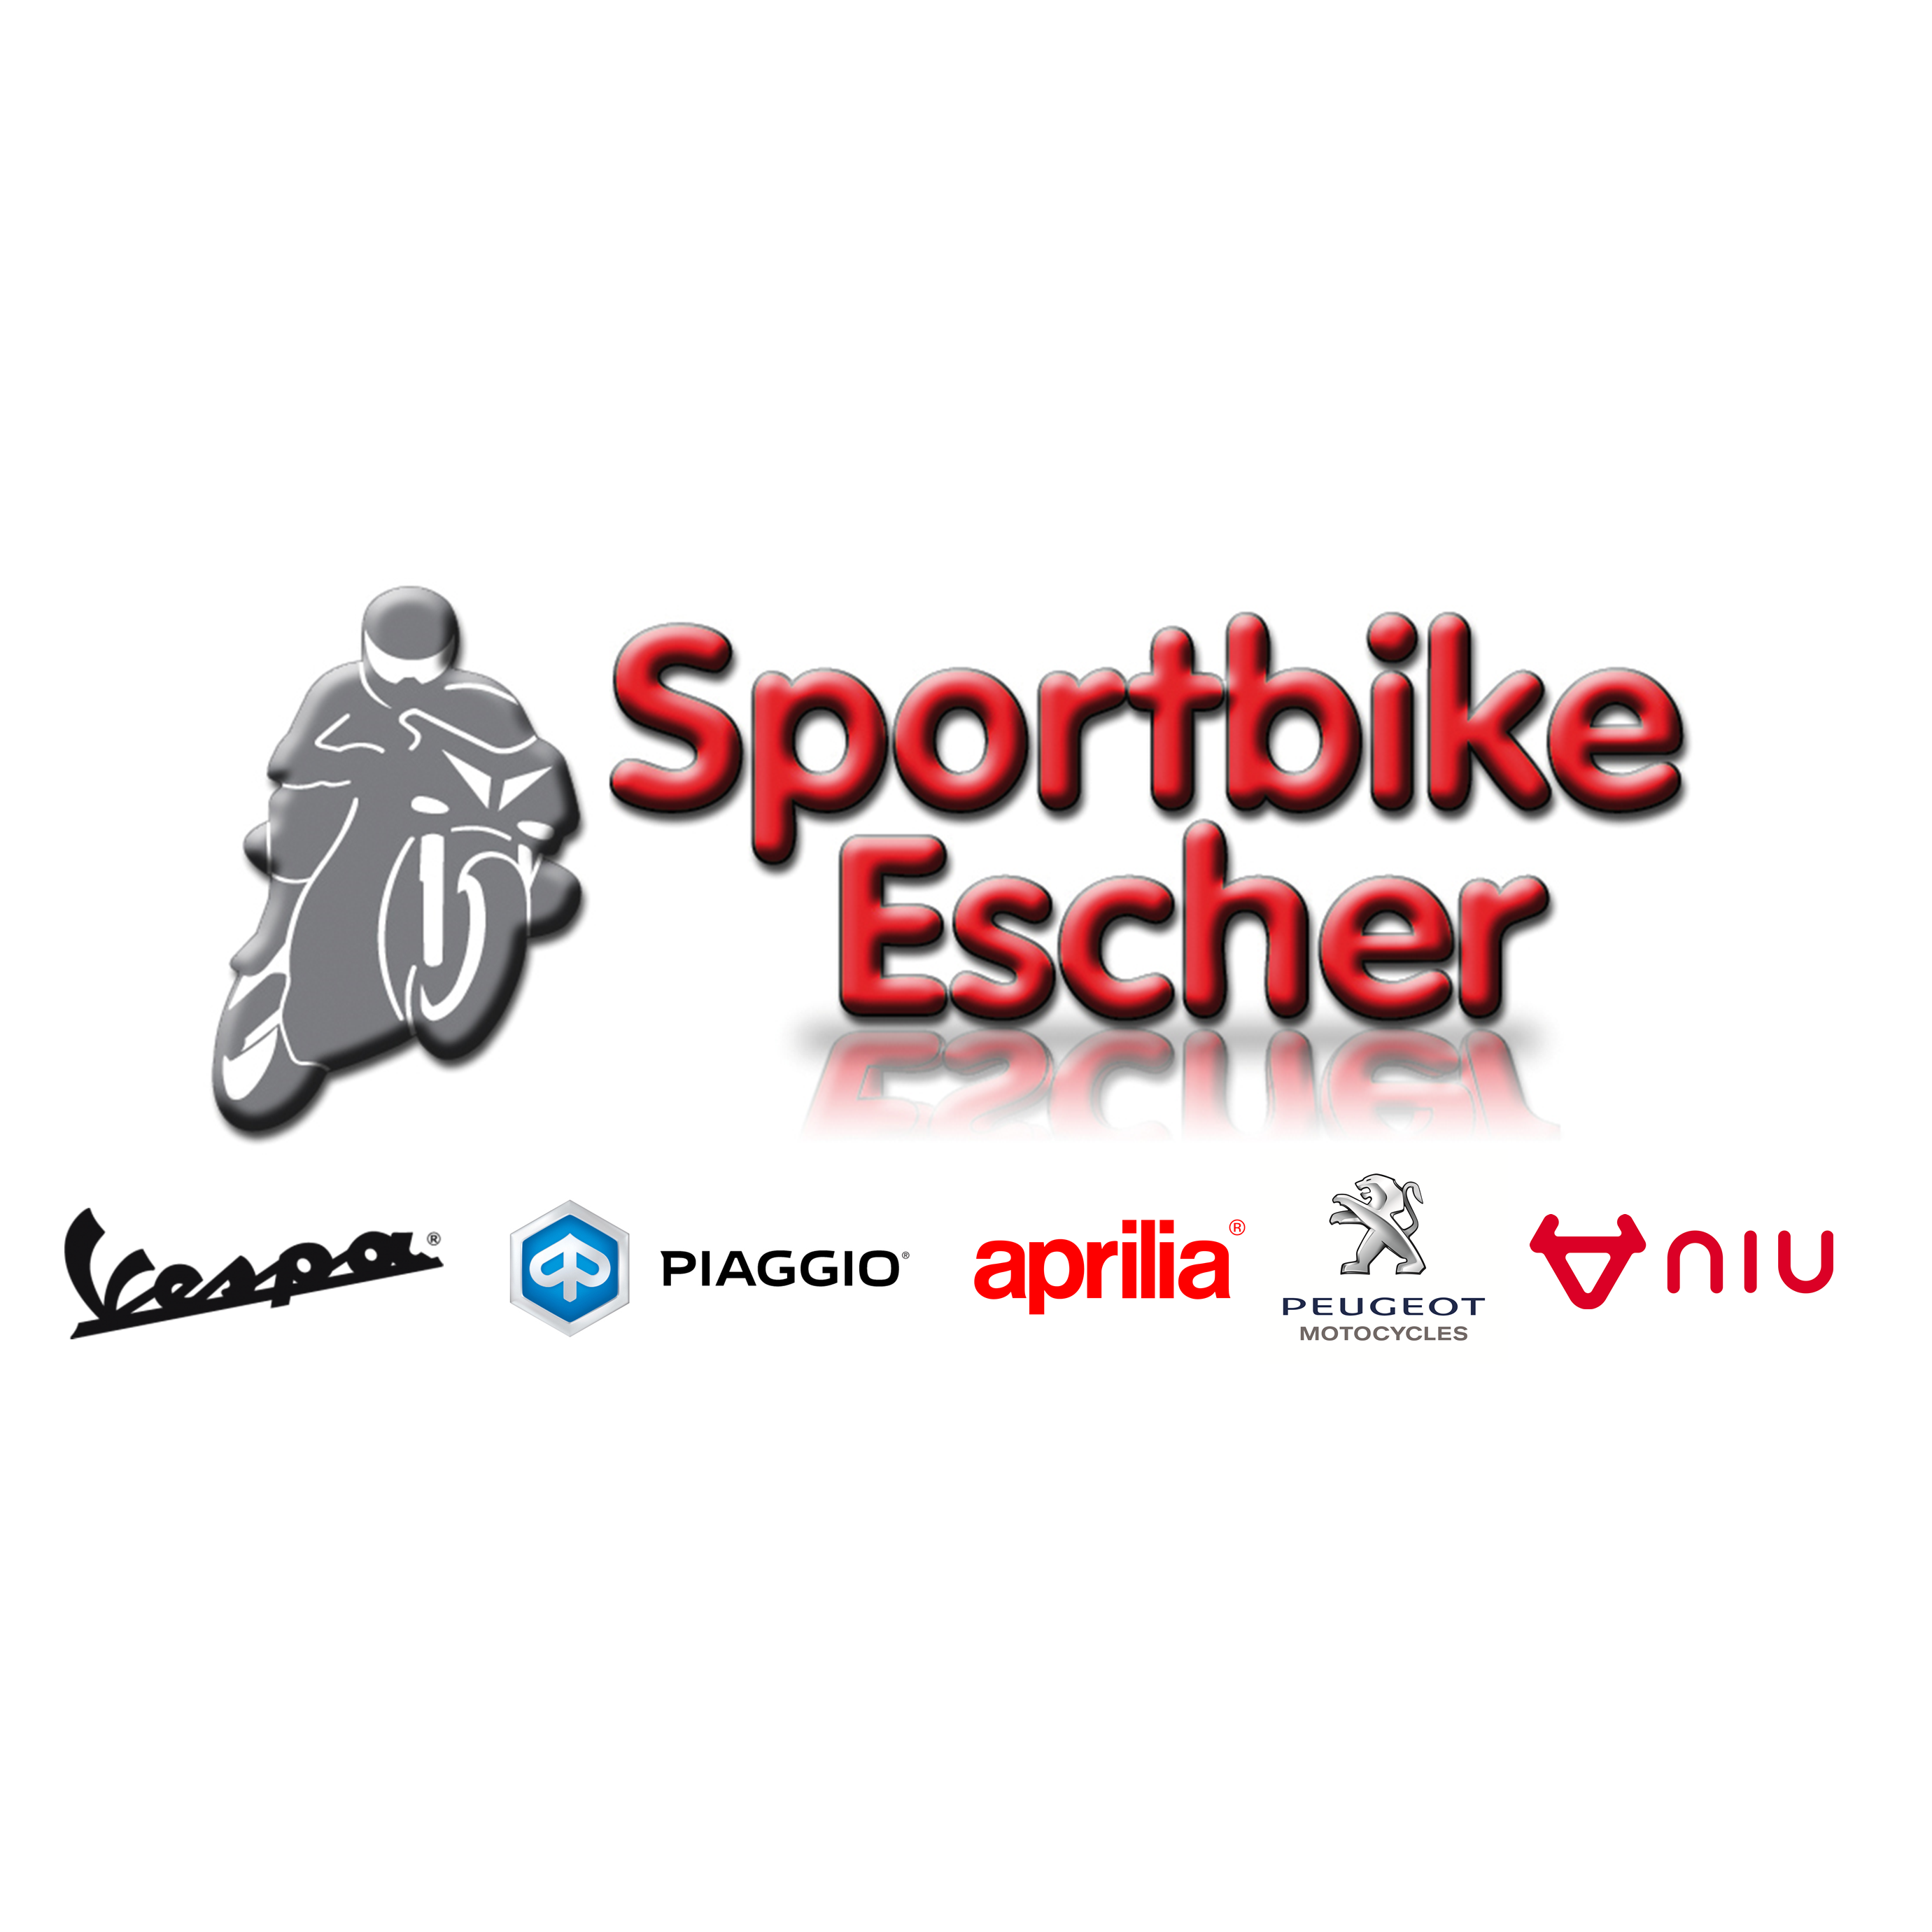 Thomas Escher Sportbike